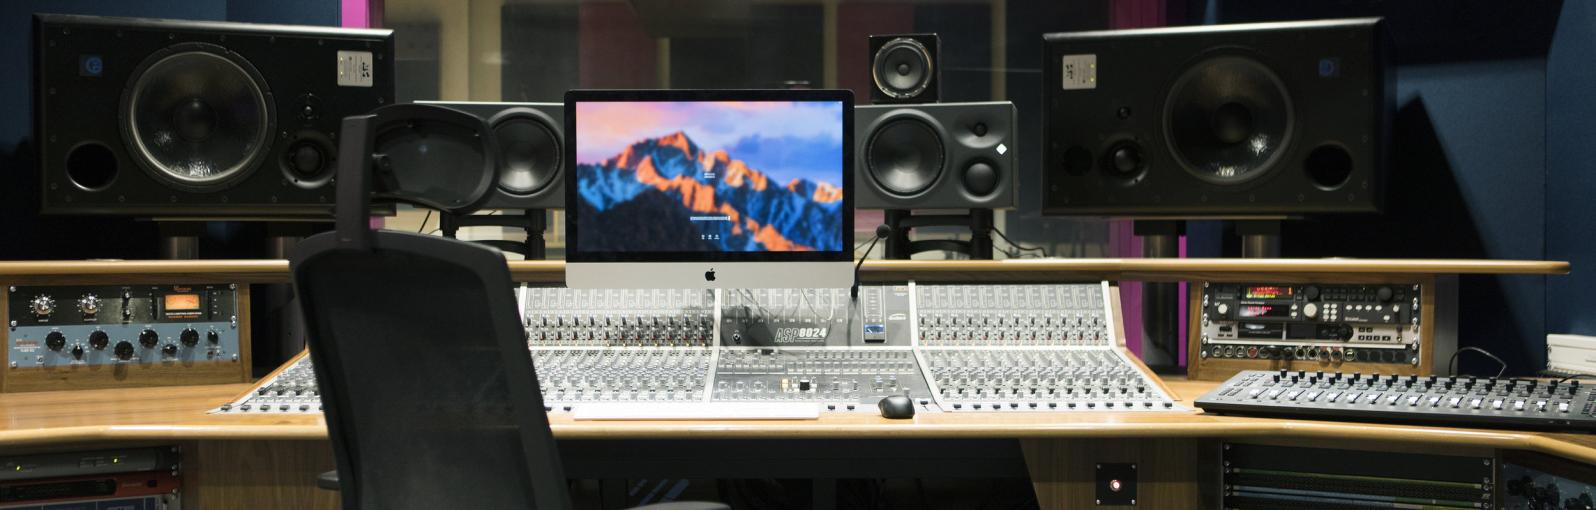 New Adelphi recording studio